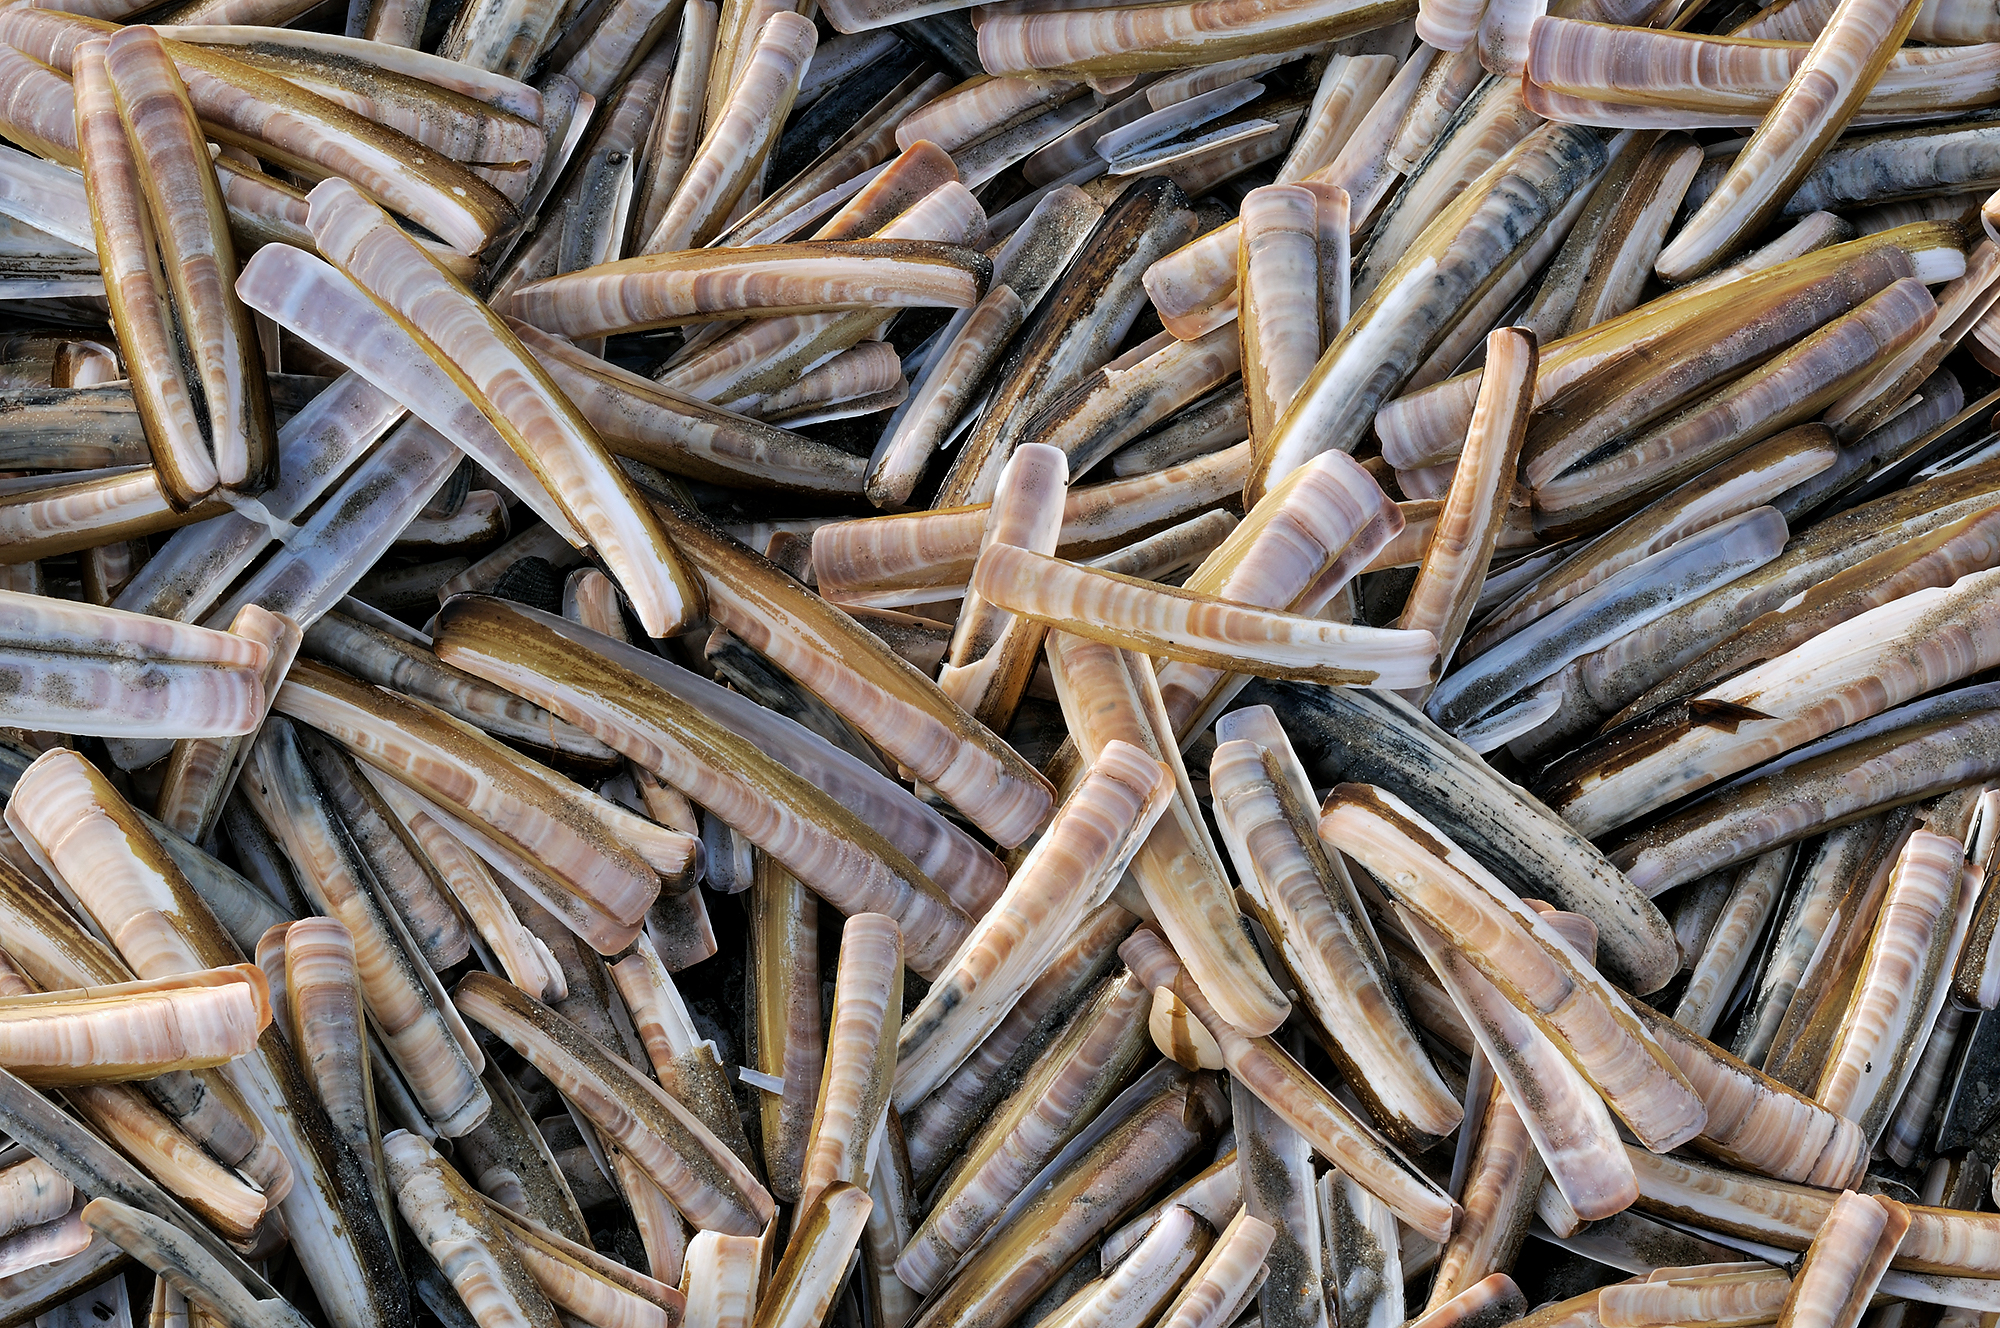 Massa aangespoelde schelpen van Amerikaanse zwaardschede (Ensis directus) na een storm op het strand van Wijk aan Zee.